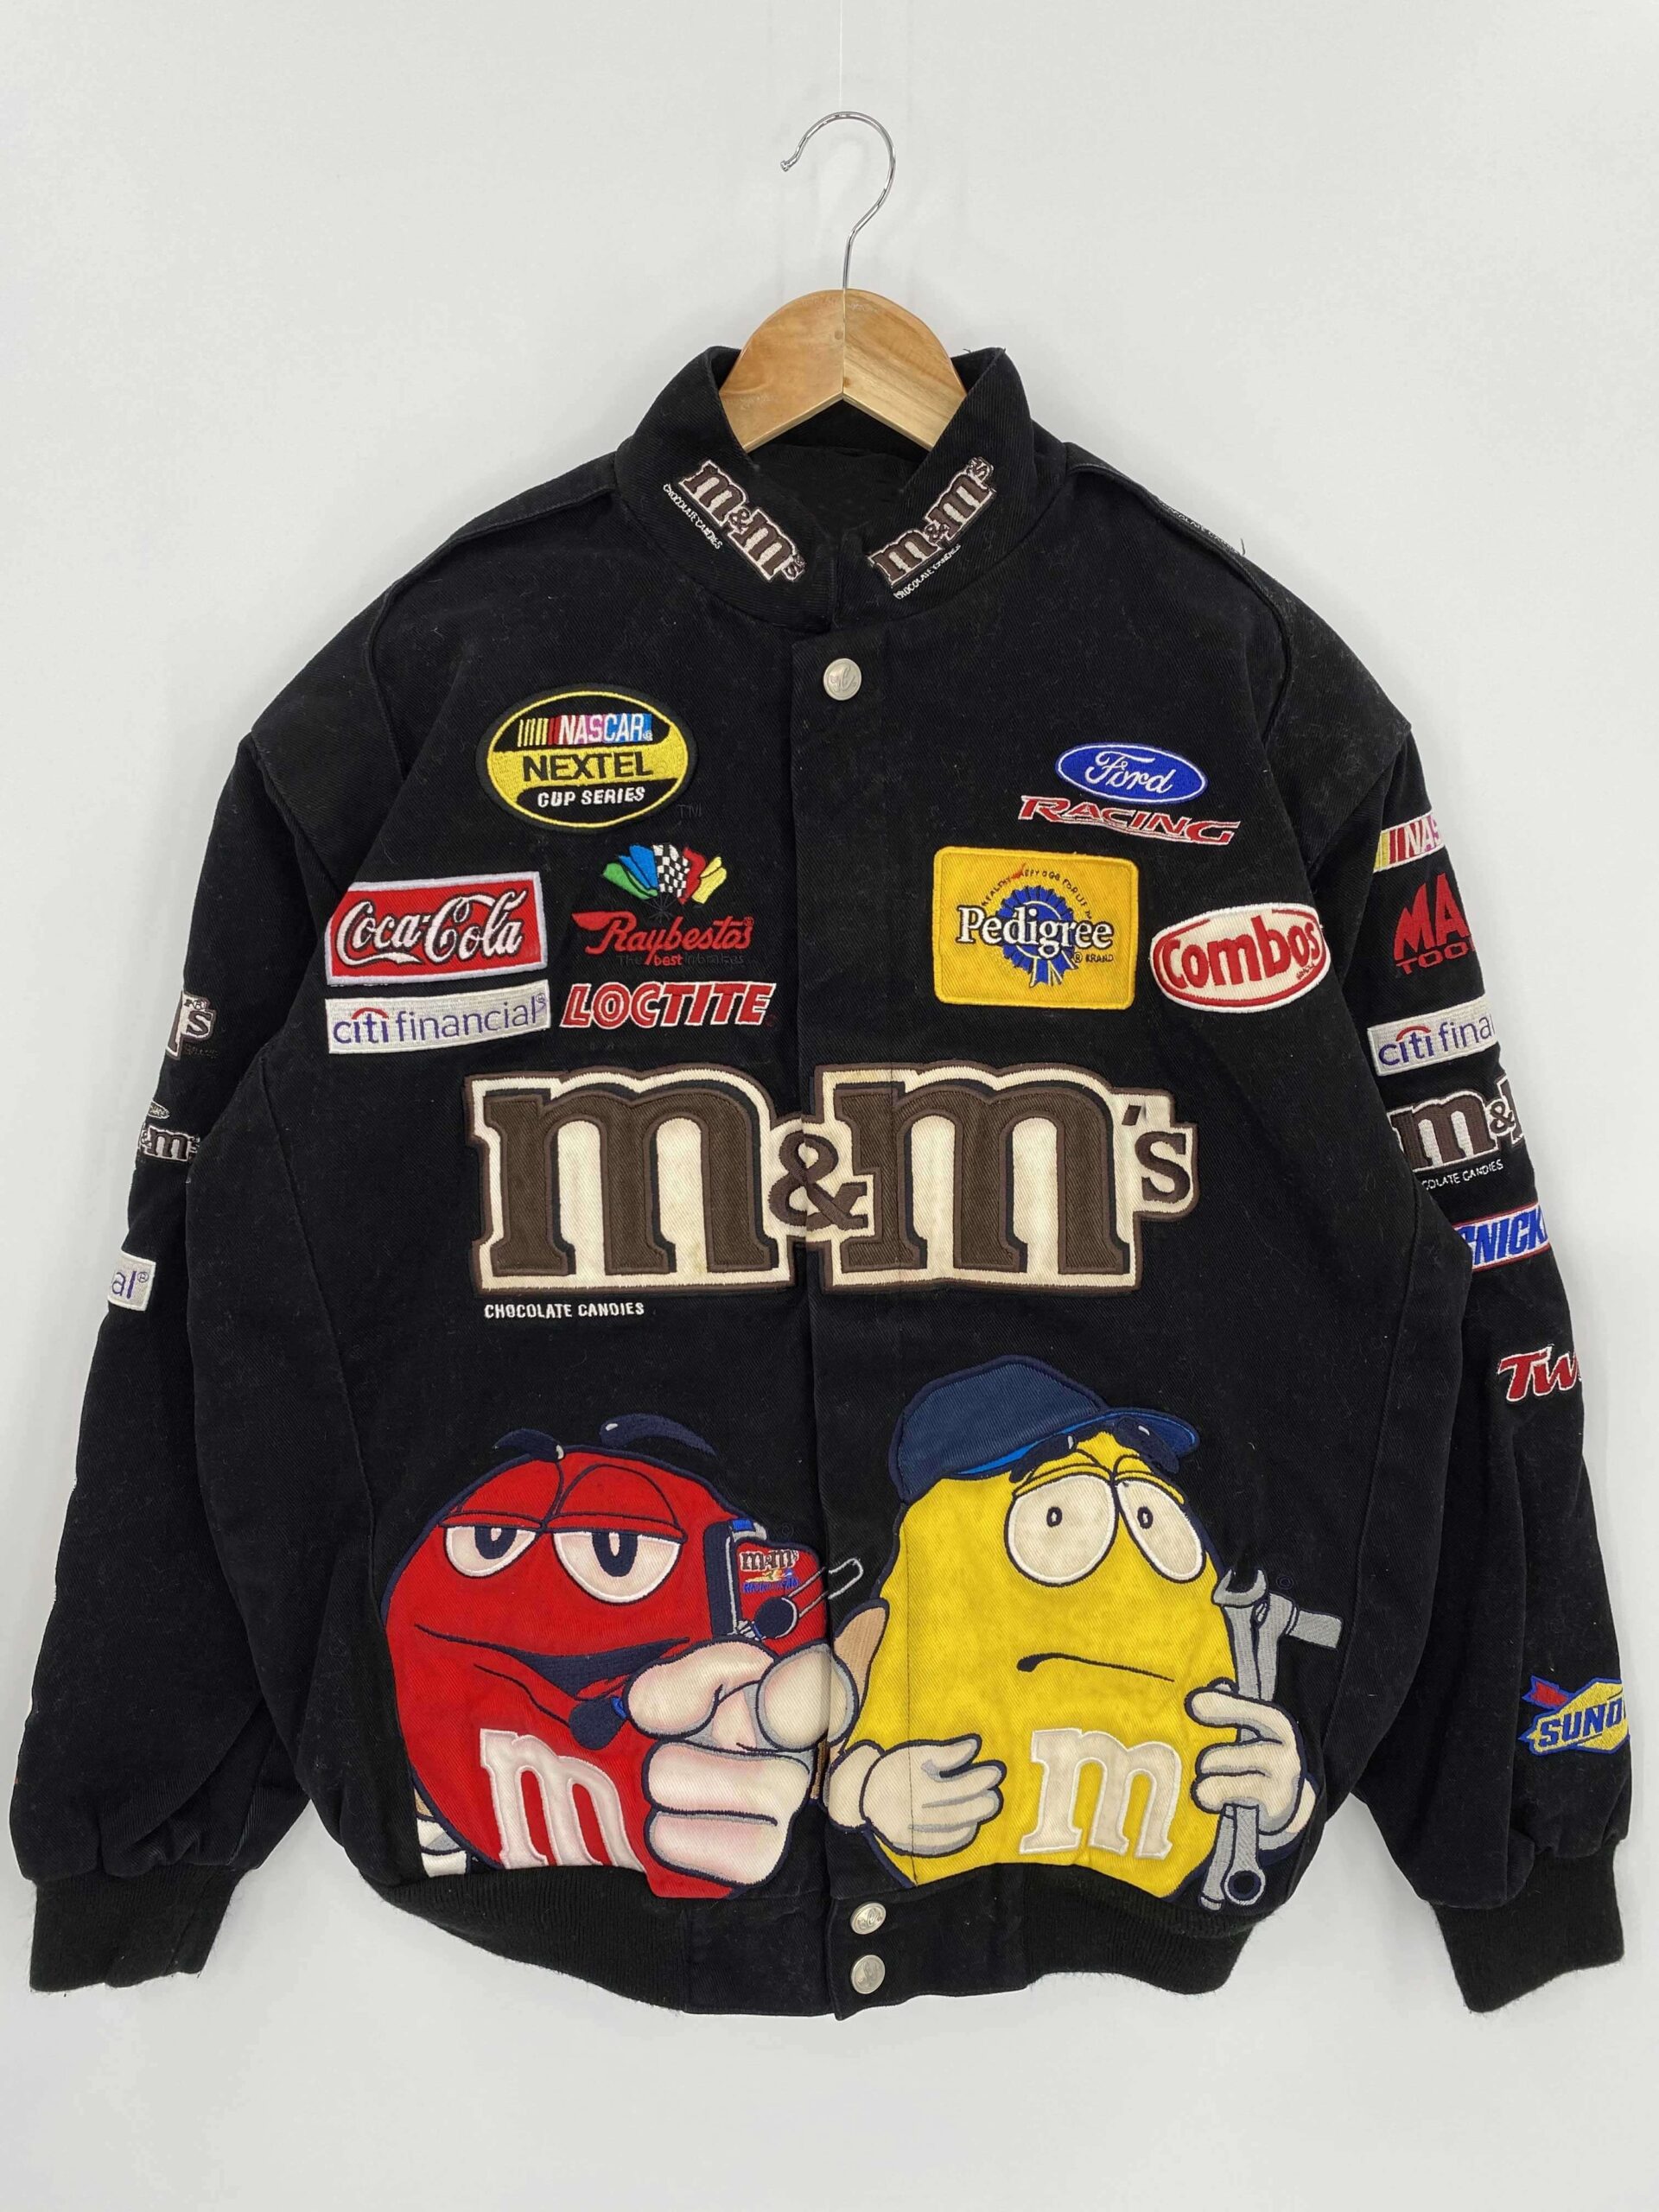 Black Vintage NASCAR M&M’s Racing Jacket - Maker of Jacket